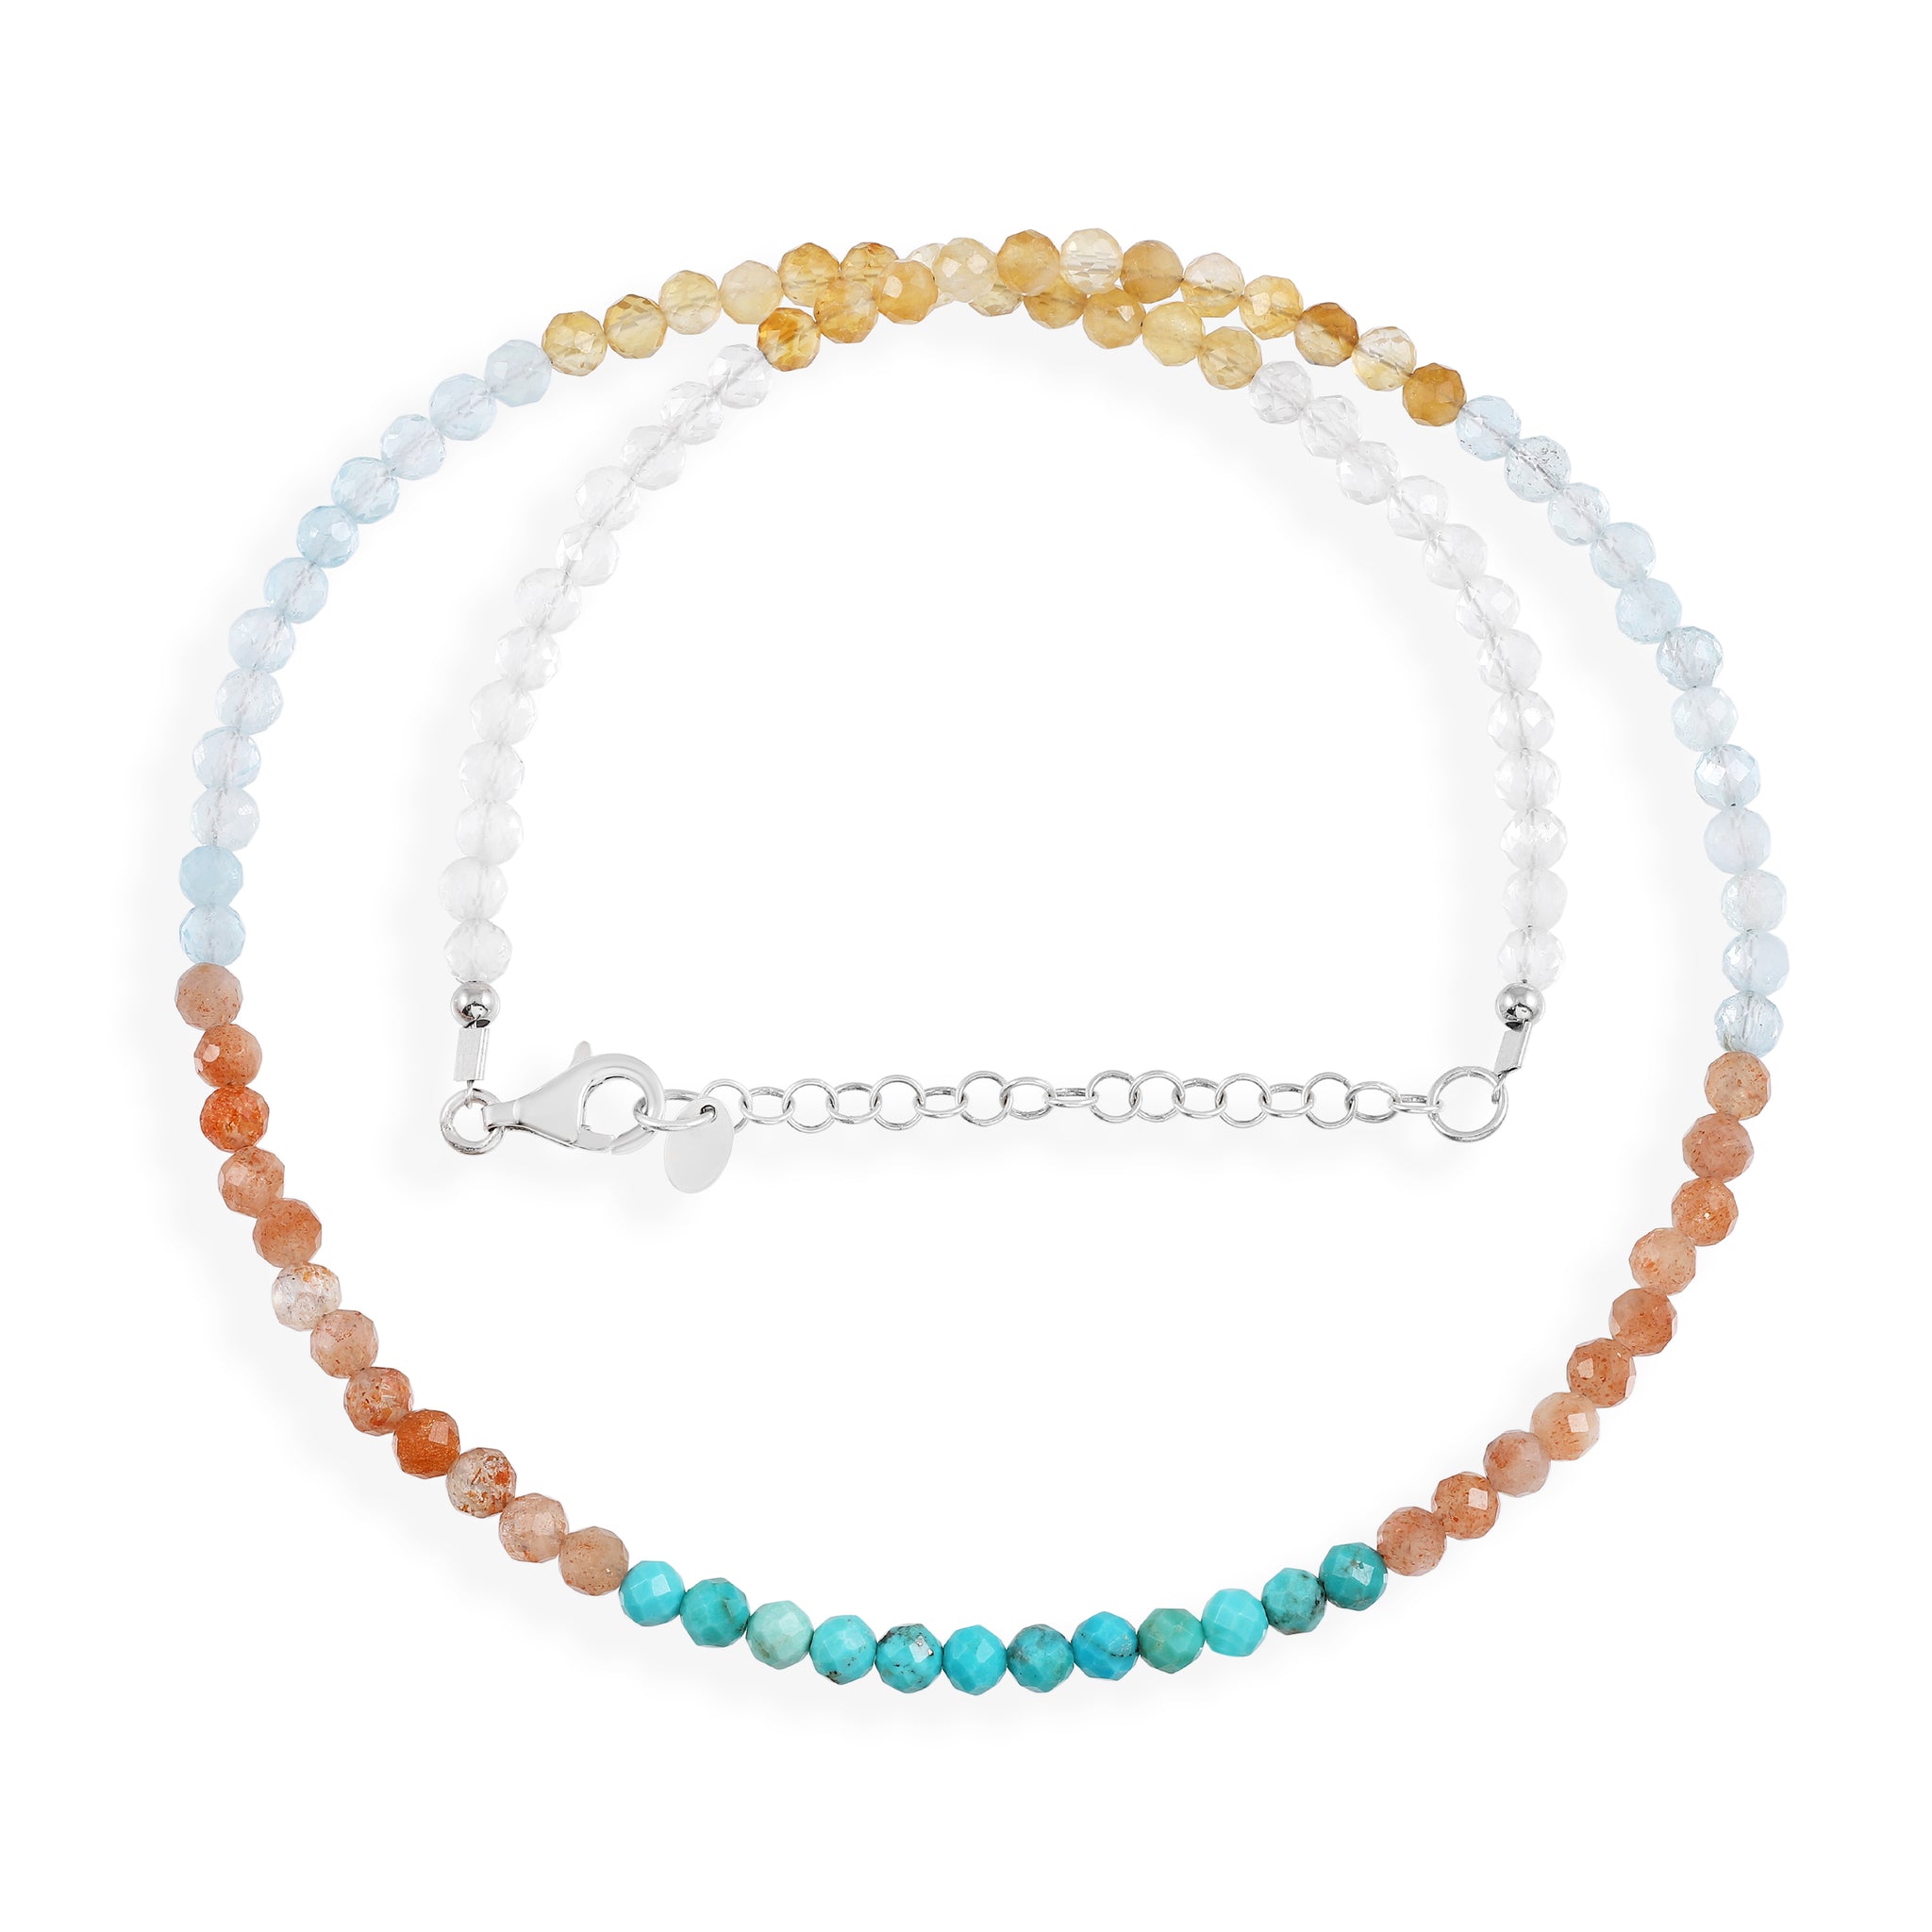 Aquamarine, Citrine, Clear Quartz, Sunstone and Turquoise Silver Necklace